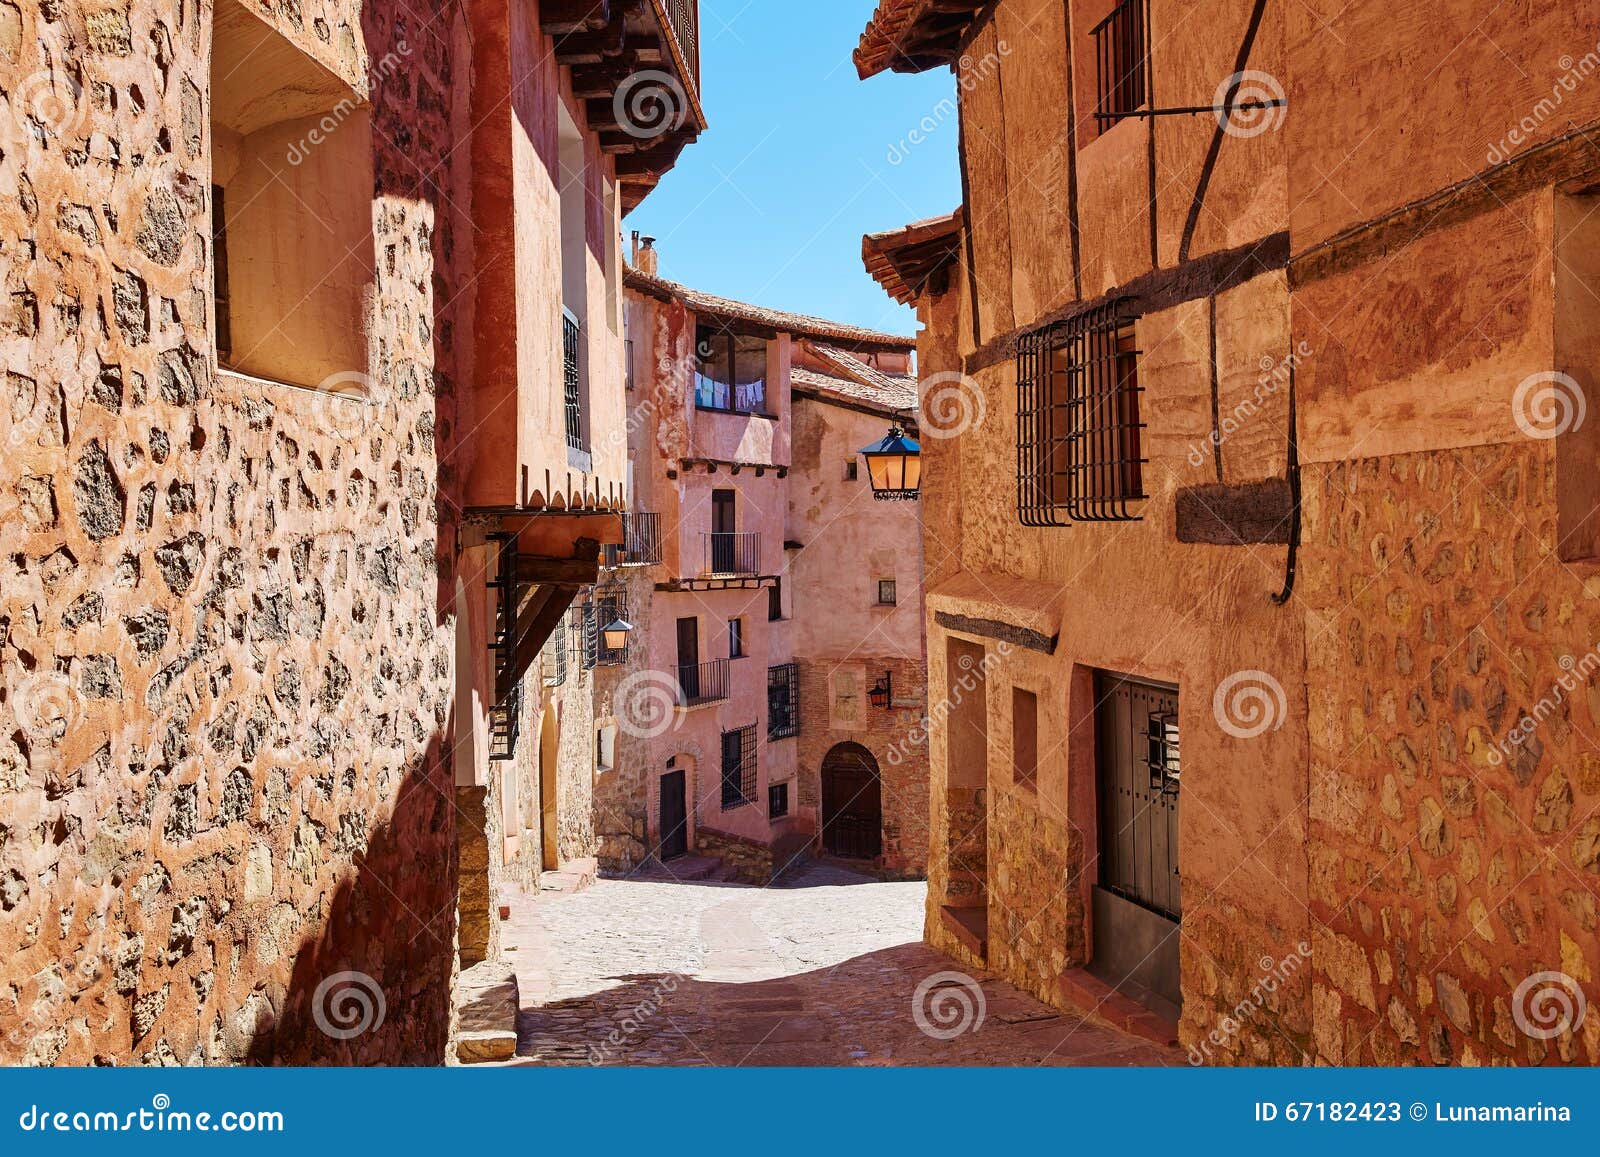 albarracin medieval town at teruel spain